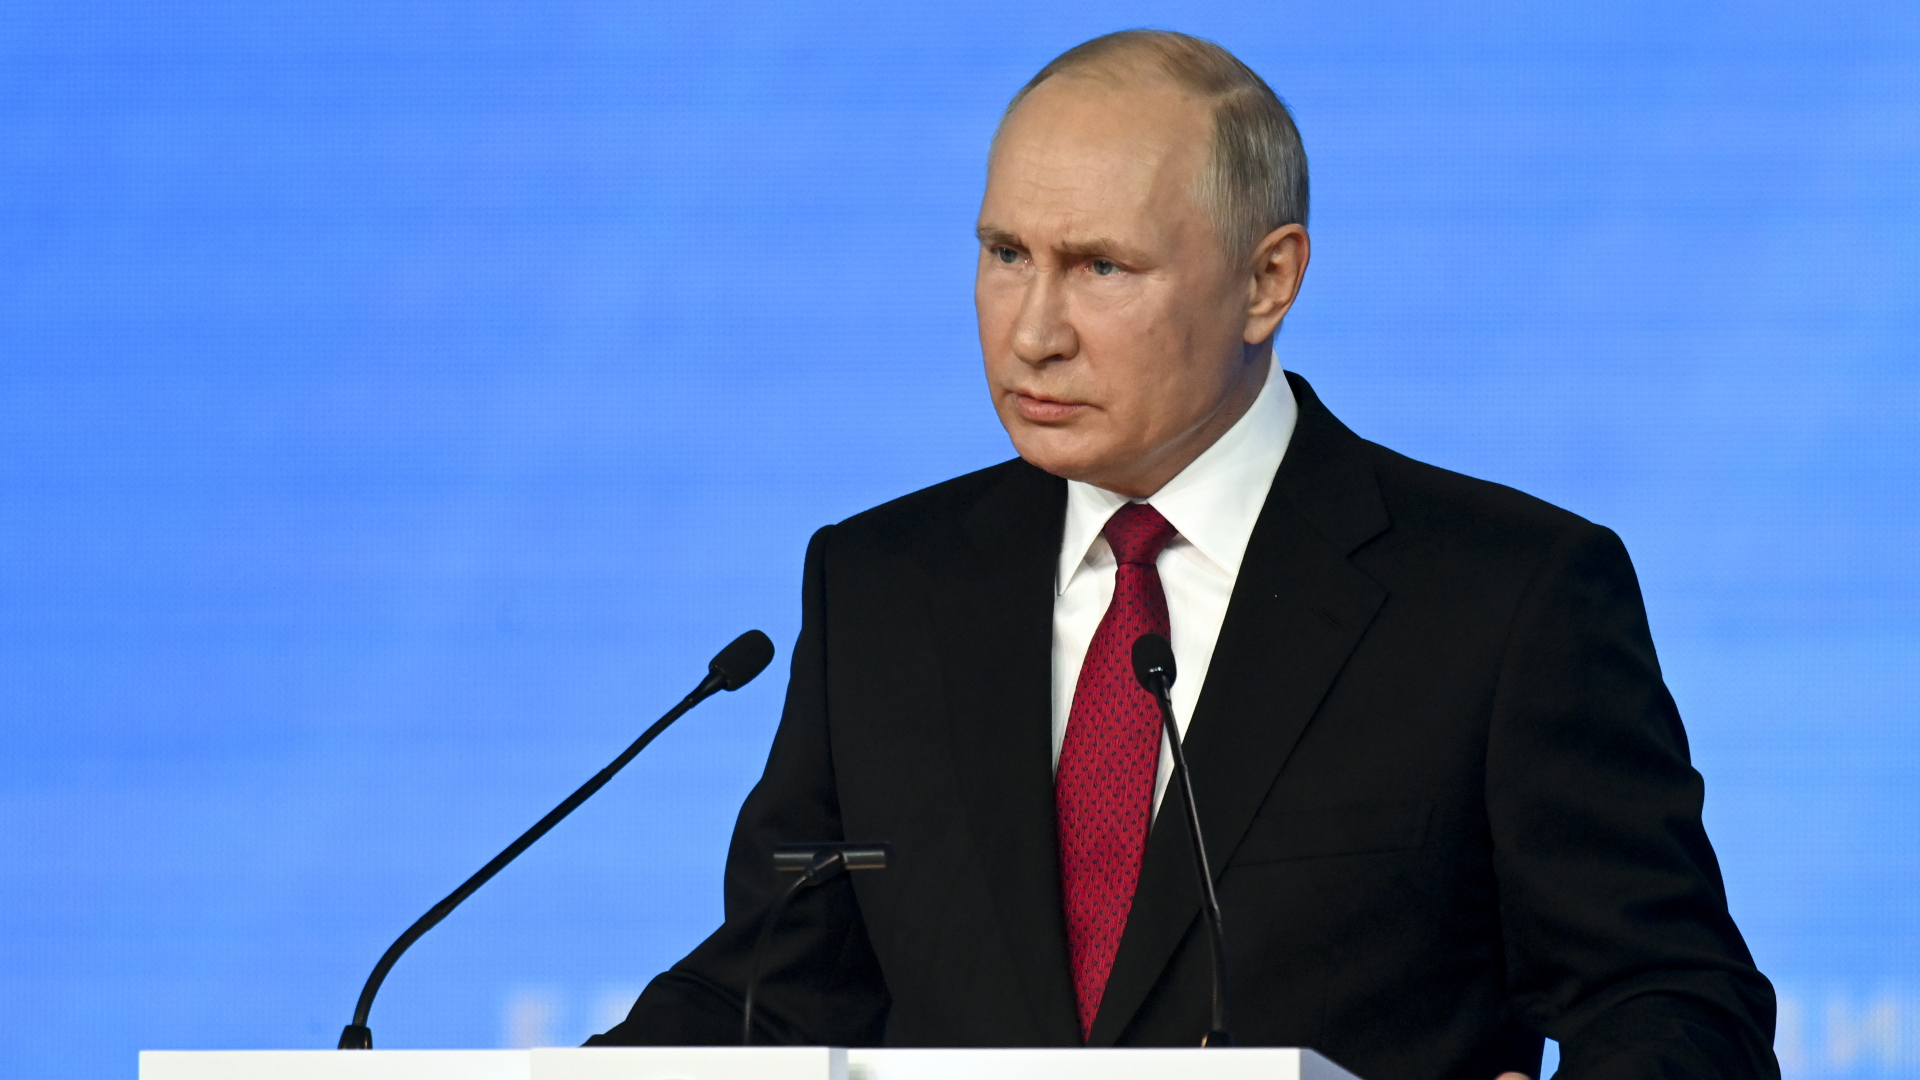 Wladimir Putin, Präsident von Russland, hält eine Rede auf dem Parteitag von "Einiges Russland". | dpa